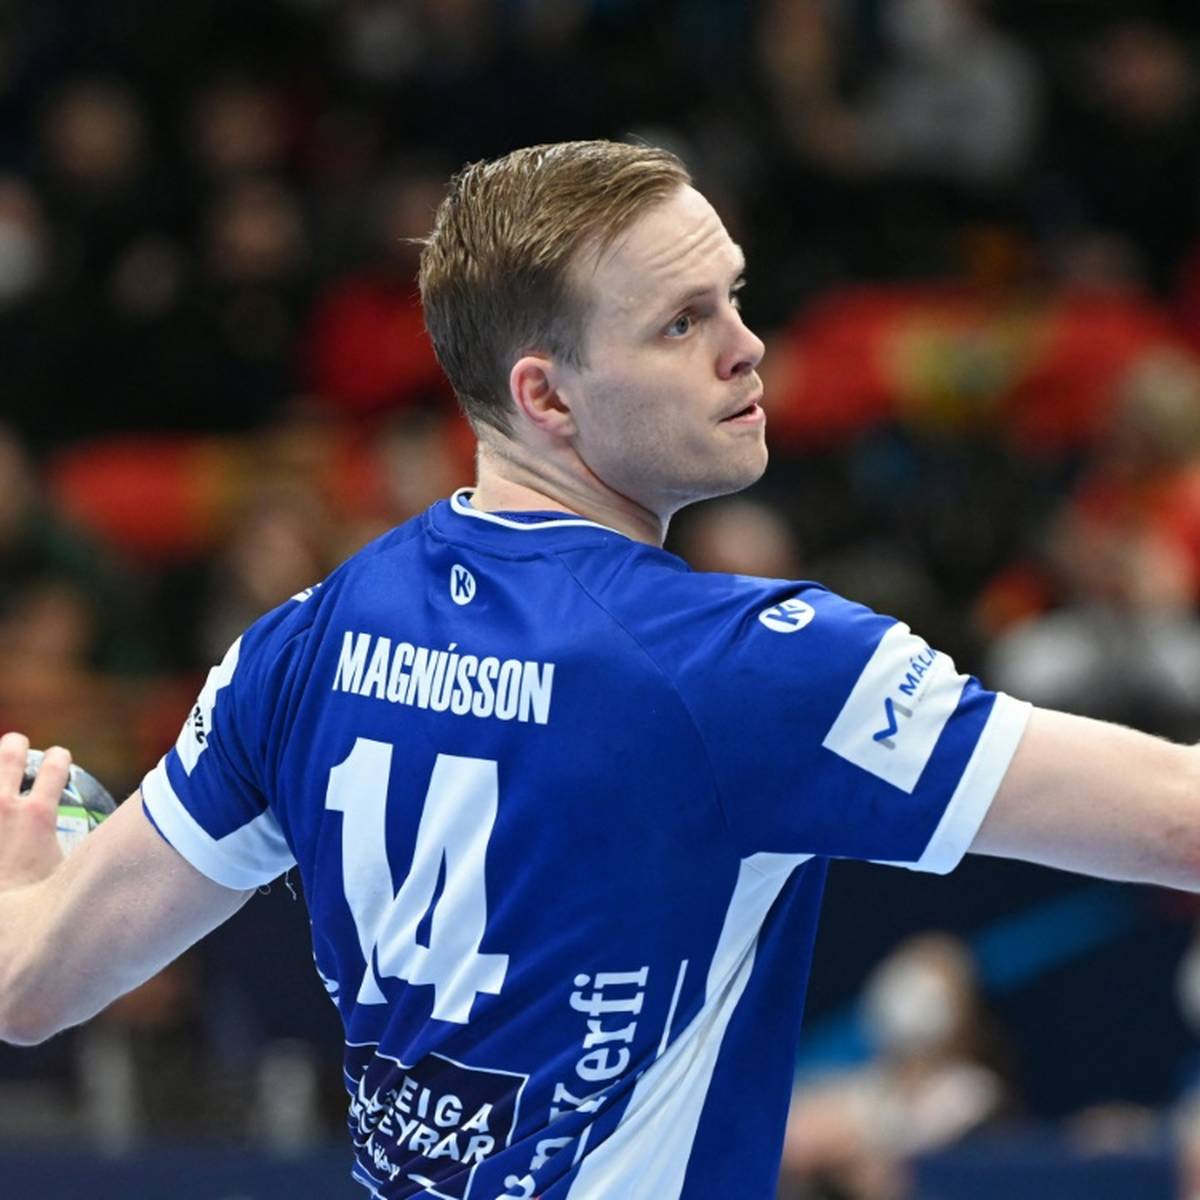 Omar Ingi Magnusson vom Handballmeister SC Magdeburg ist mit weitem Abstand zum besten Spieler der abgelaufenen Bundesligasaison gewählt worden.